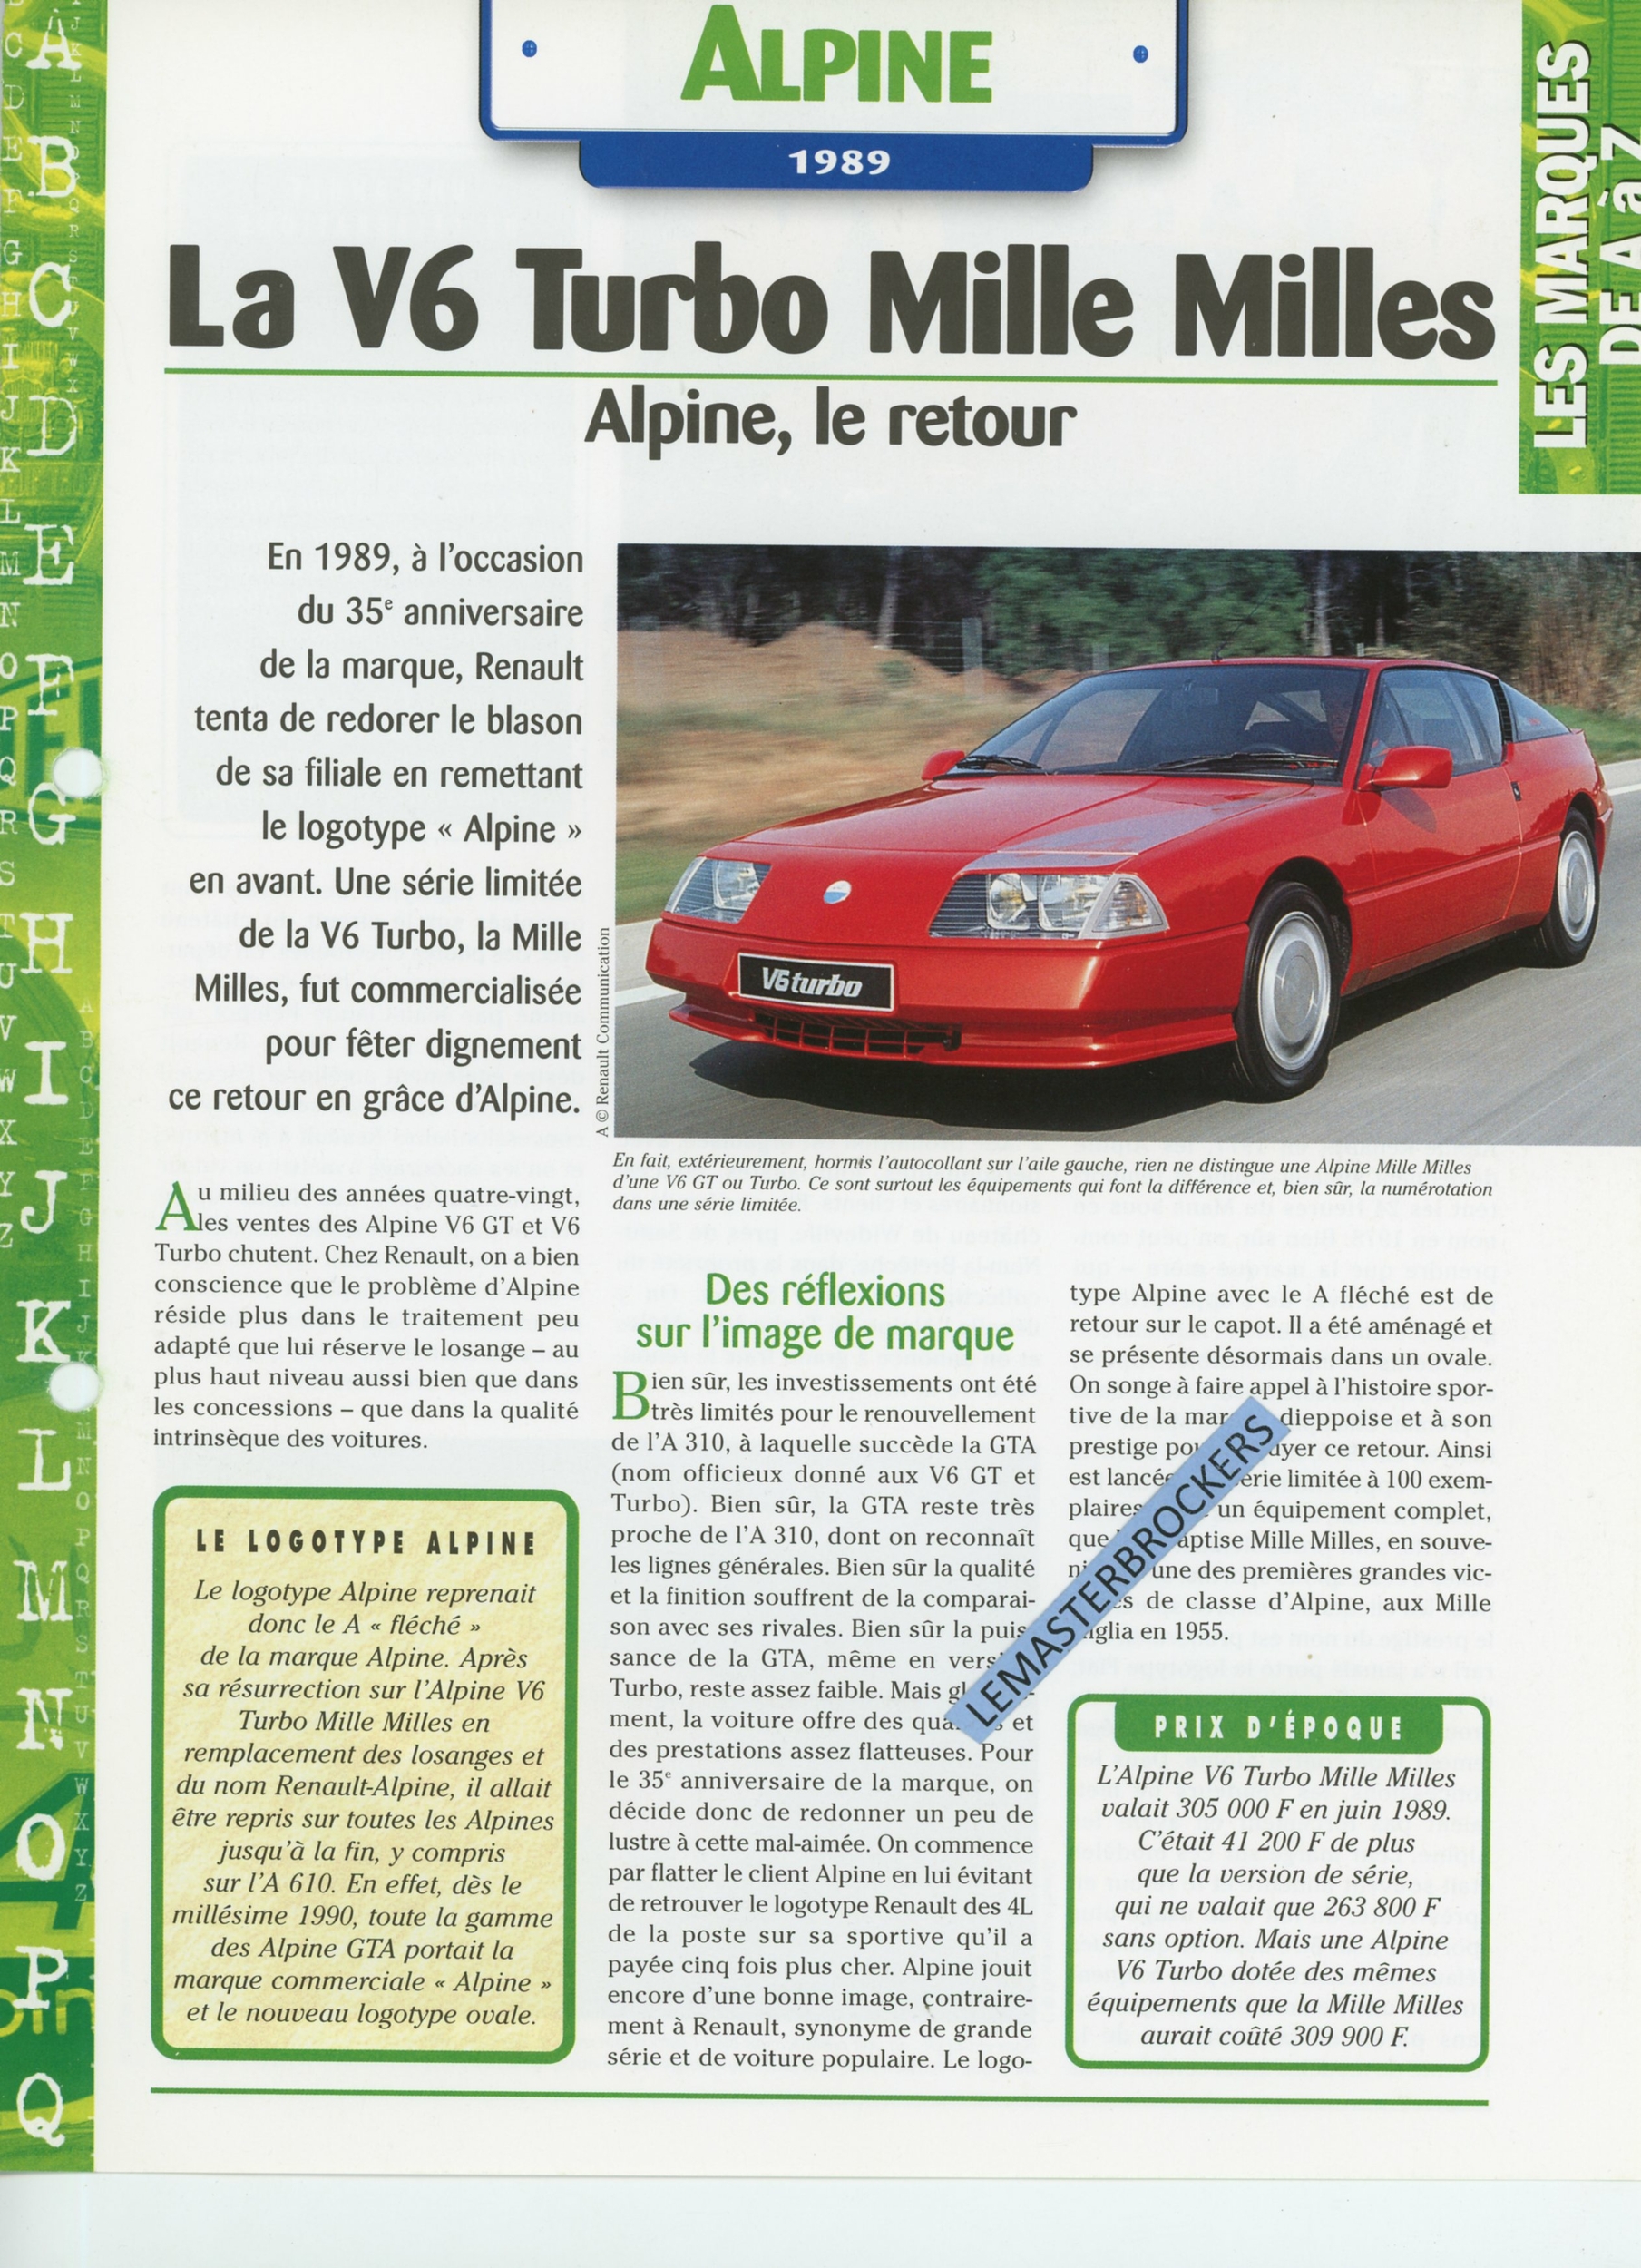 ALPINE V6 TURBO MILLE MILLES - 1989 - FICHE AUTO HACHETTE